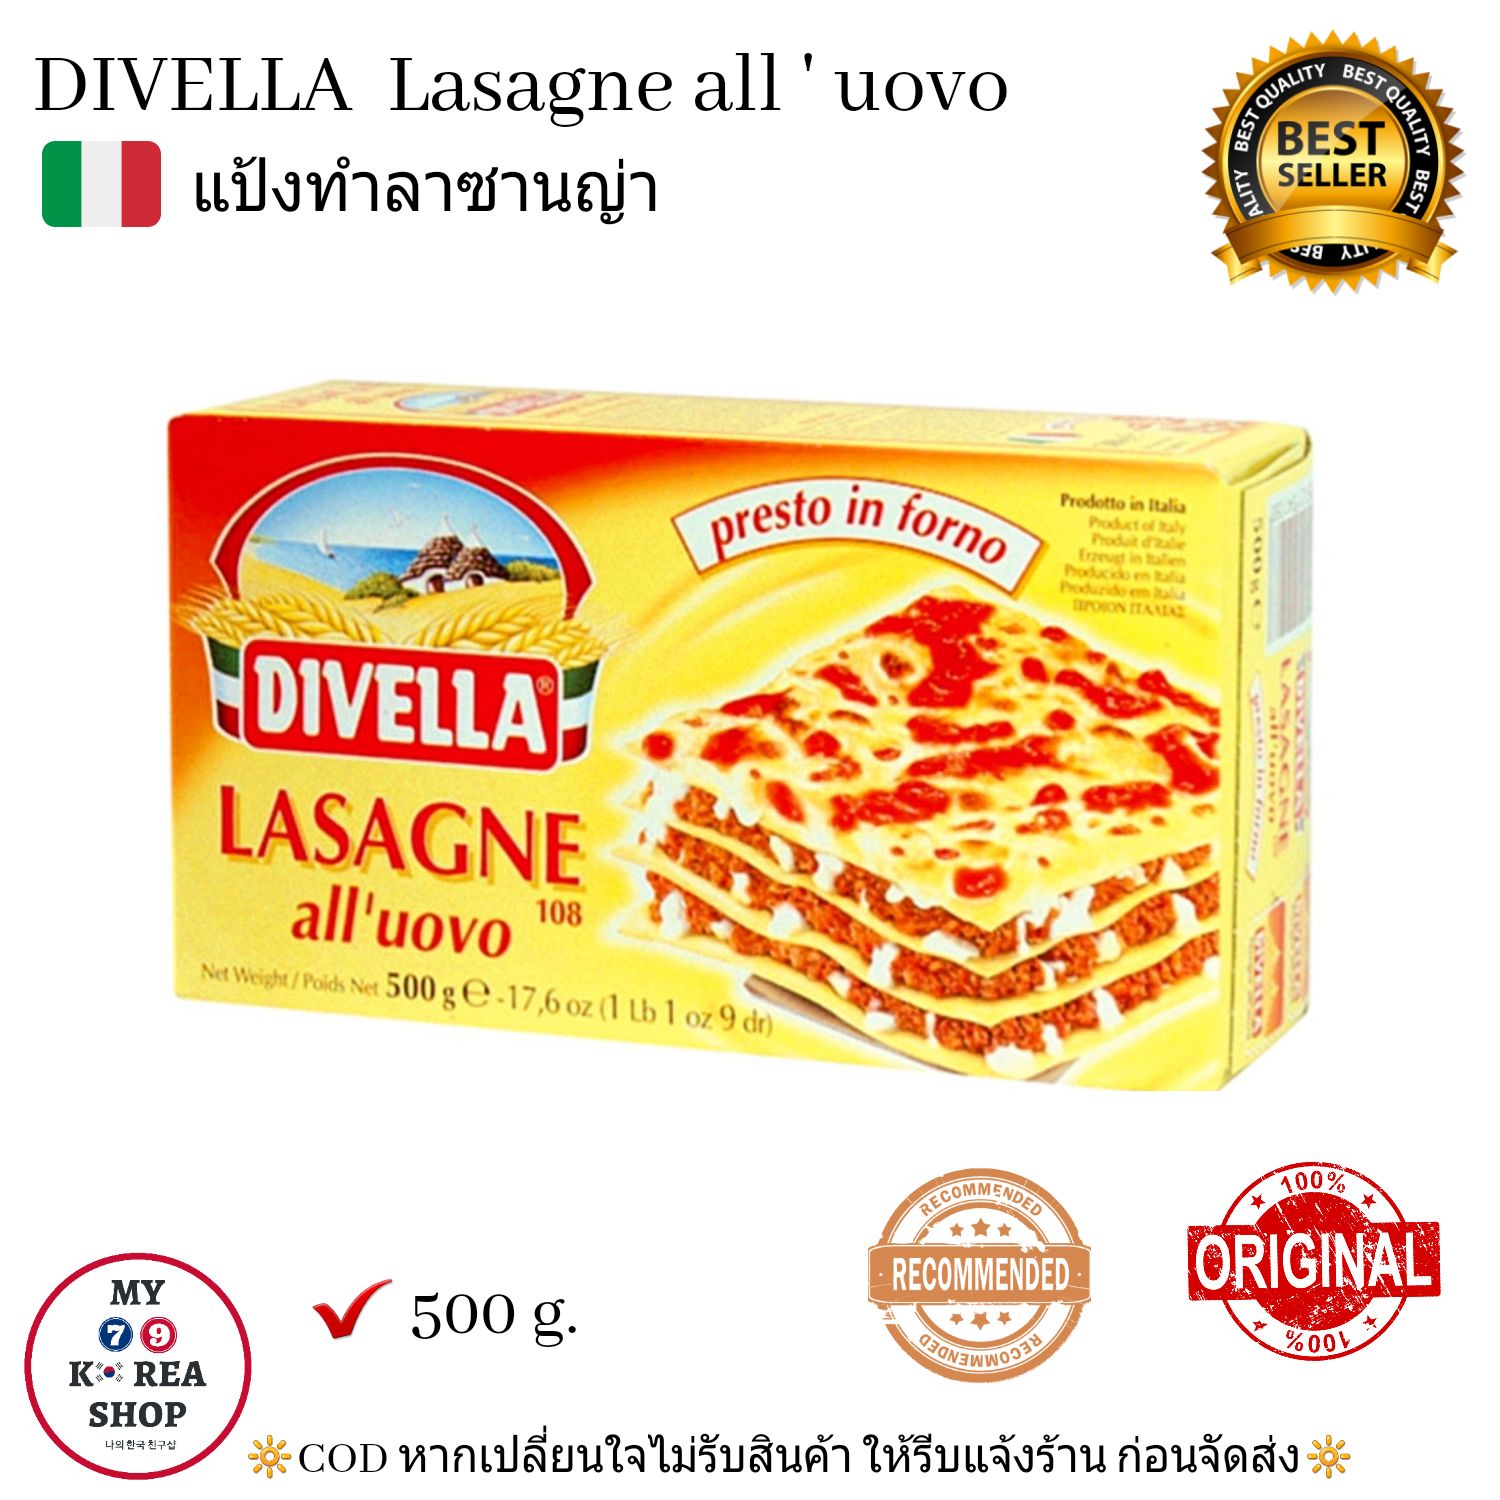 Lasagna all's Uovo ( Divella ) 500 g. แป้งทำลาซานญ่า ดิเวลล่า